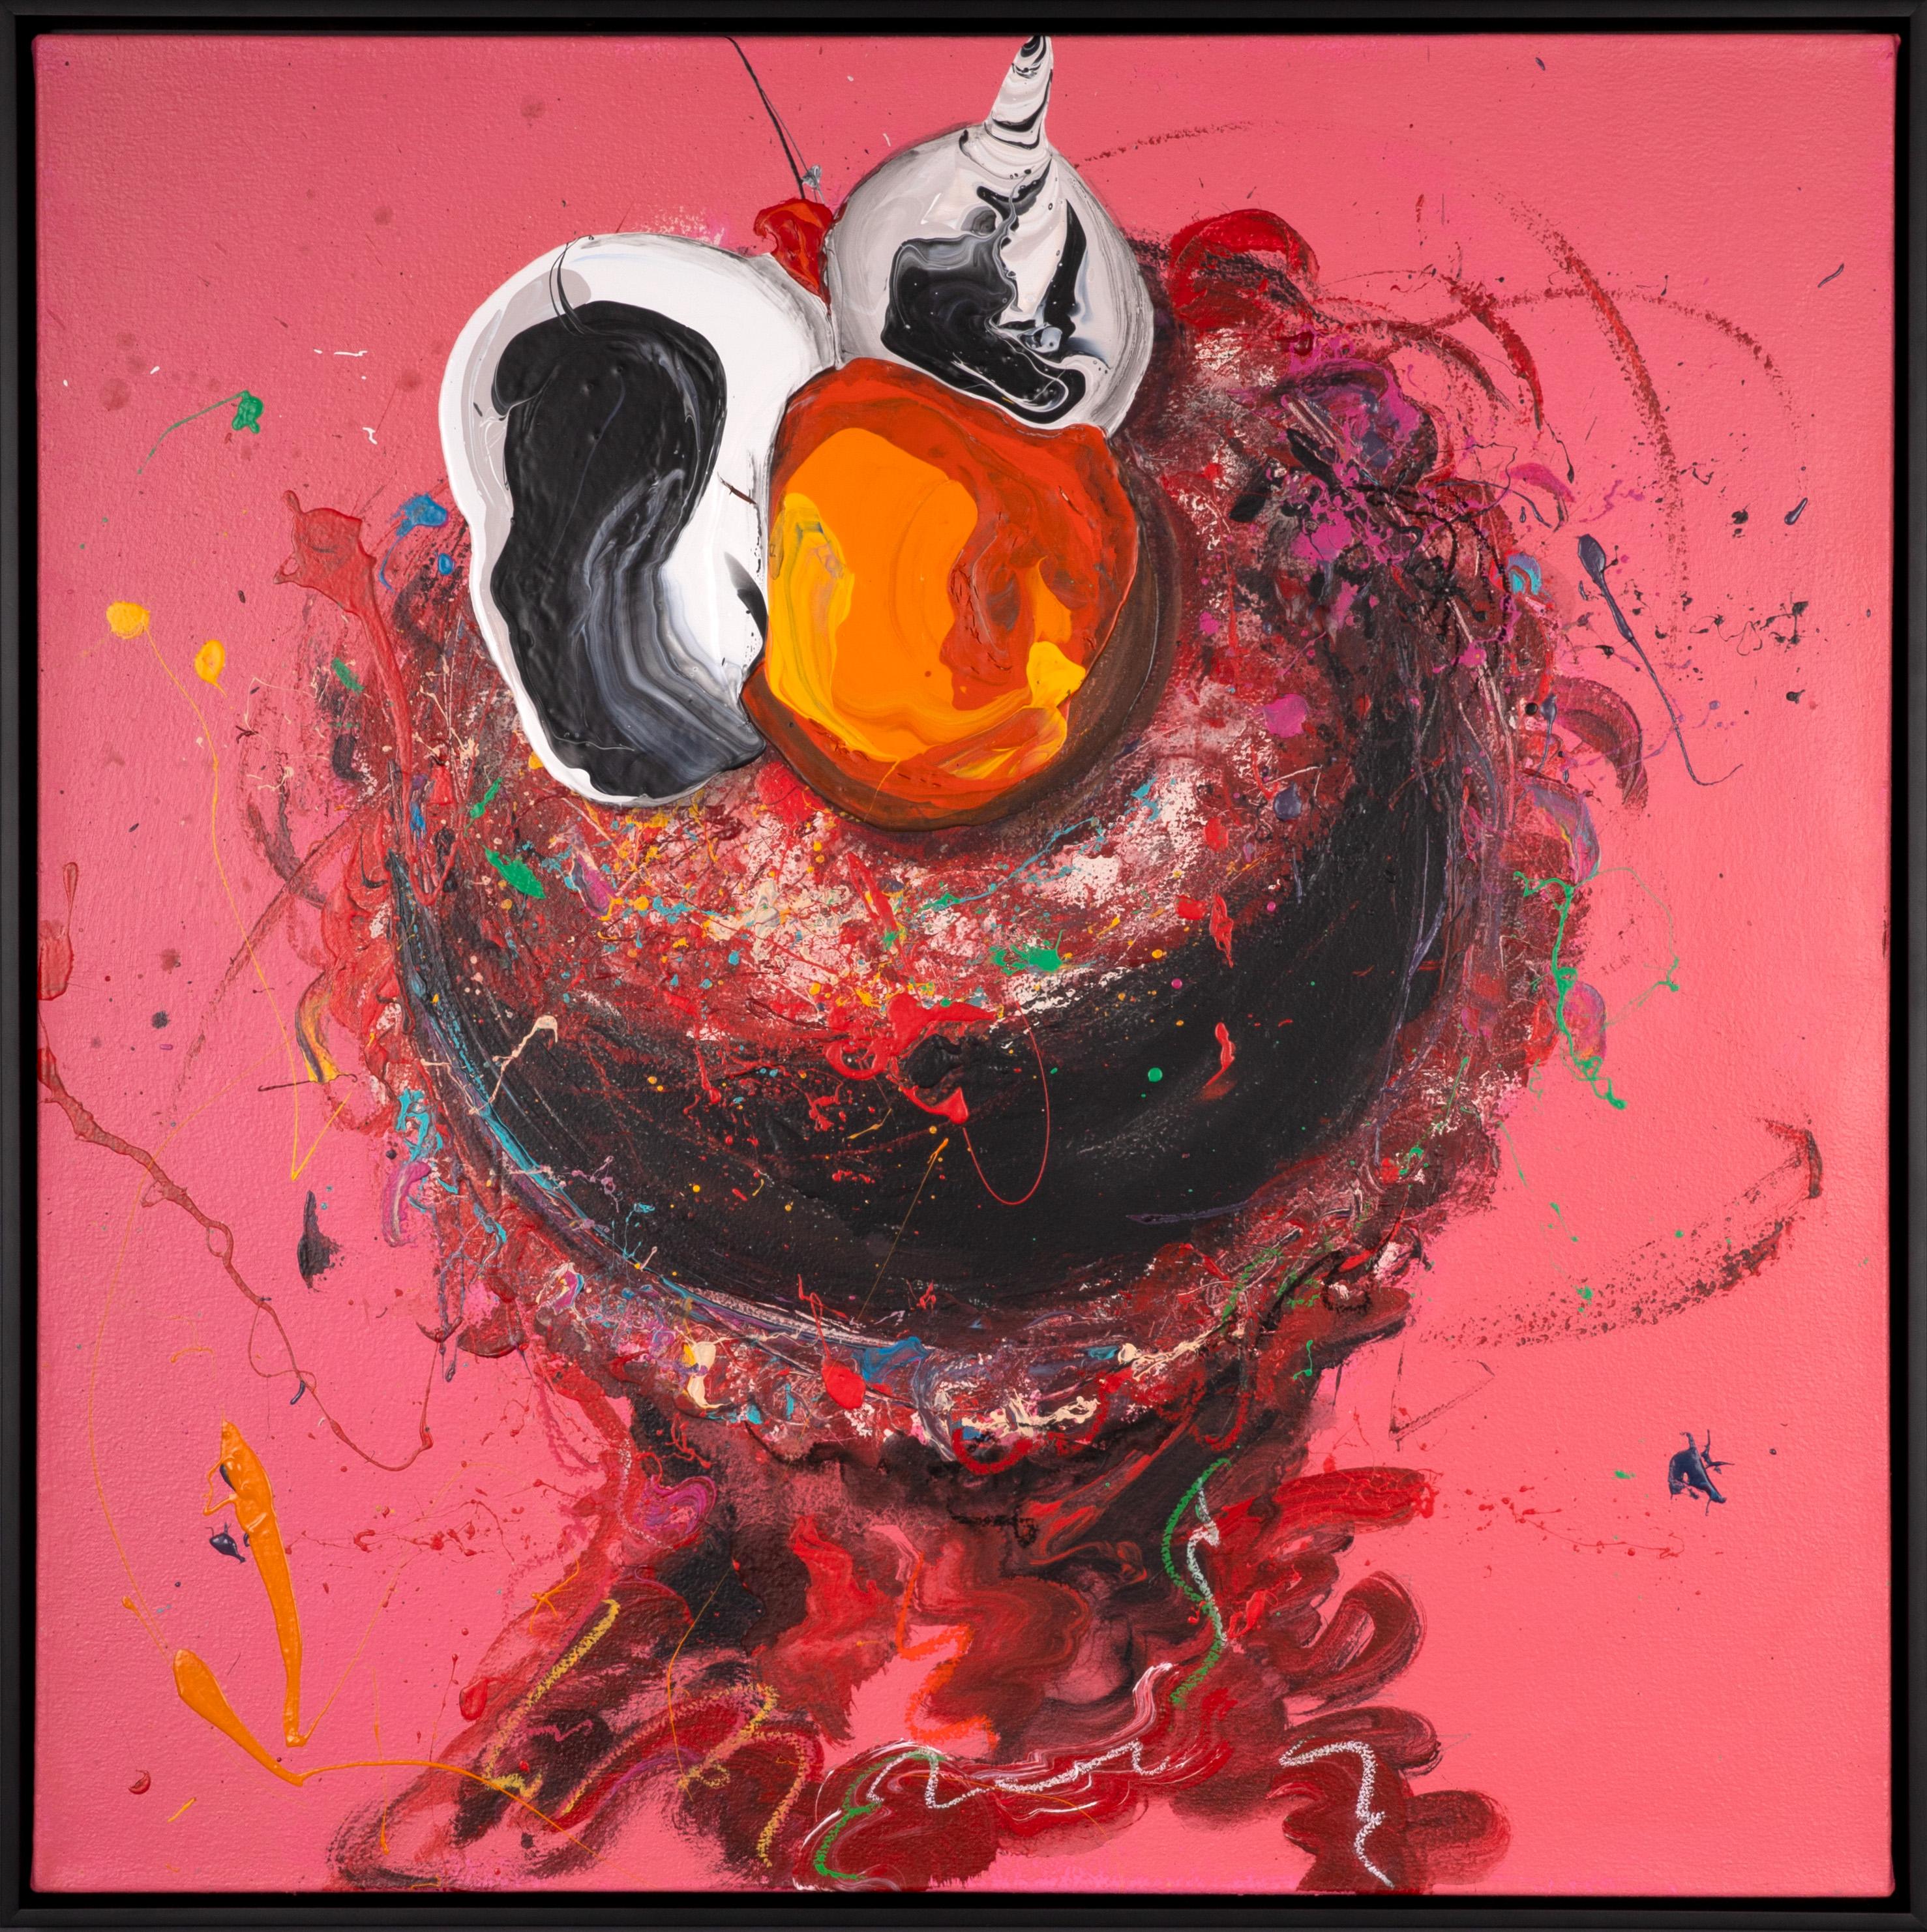 La peinture unique "Elmo" est une représentation ludique et lumineuse du personnage de la rue Sésame. Rondinone déforme son sujet intentionnellement, apportant une nouvelle dimension à un personnage bien-aimé. Cette peinture unique de 2022 mesure